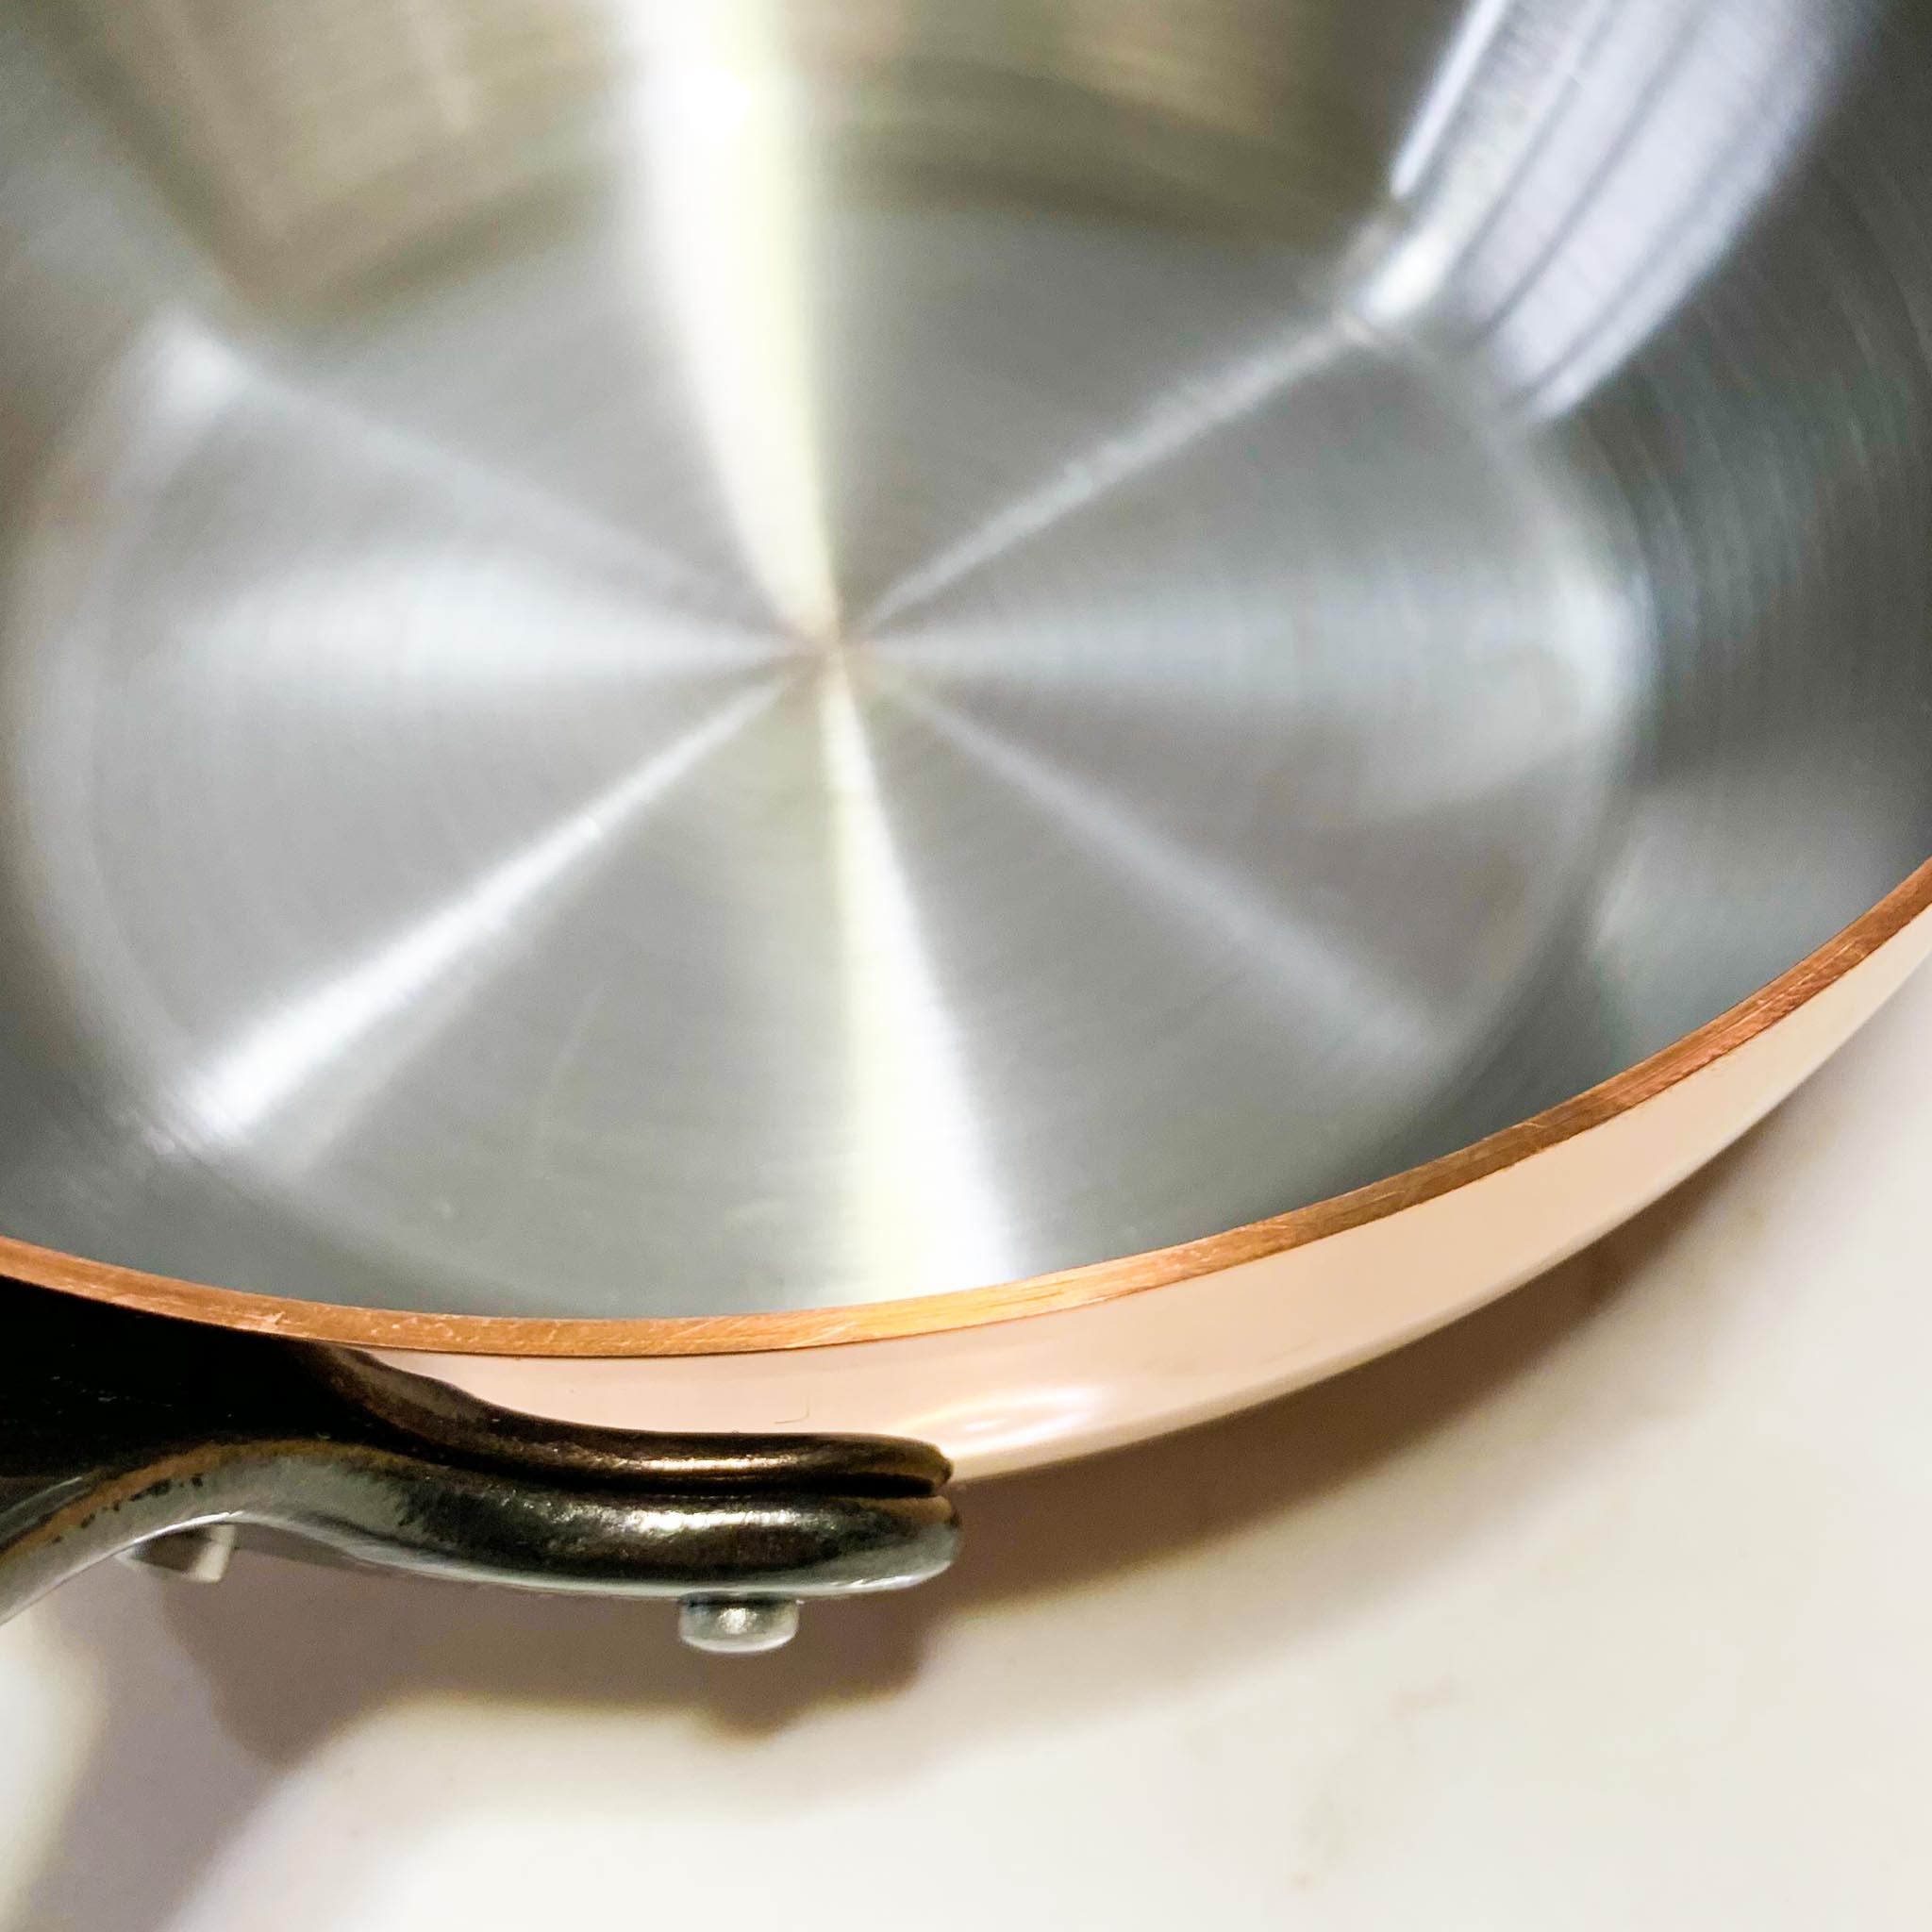 De Buyer Ultimate Induction-Compatible Copper Pan Set